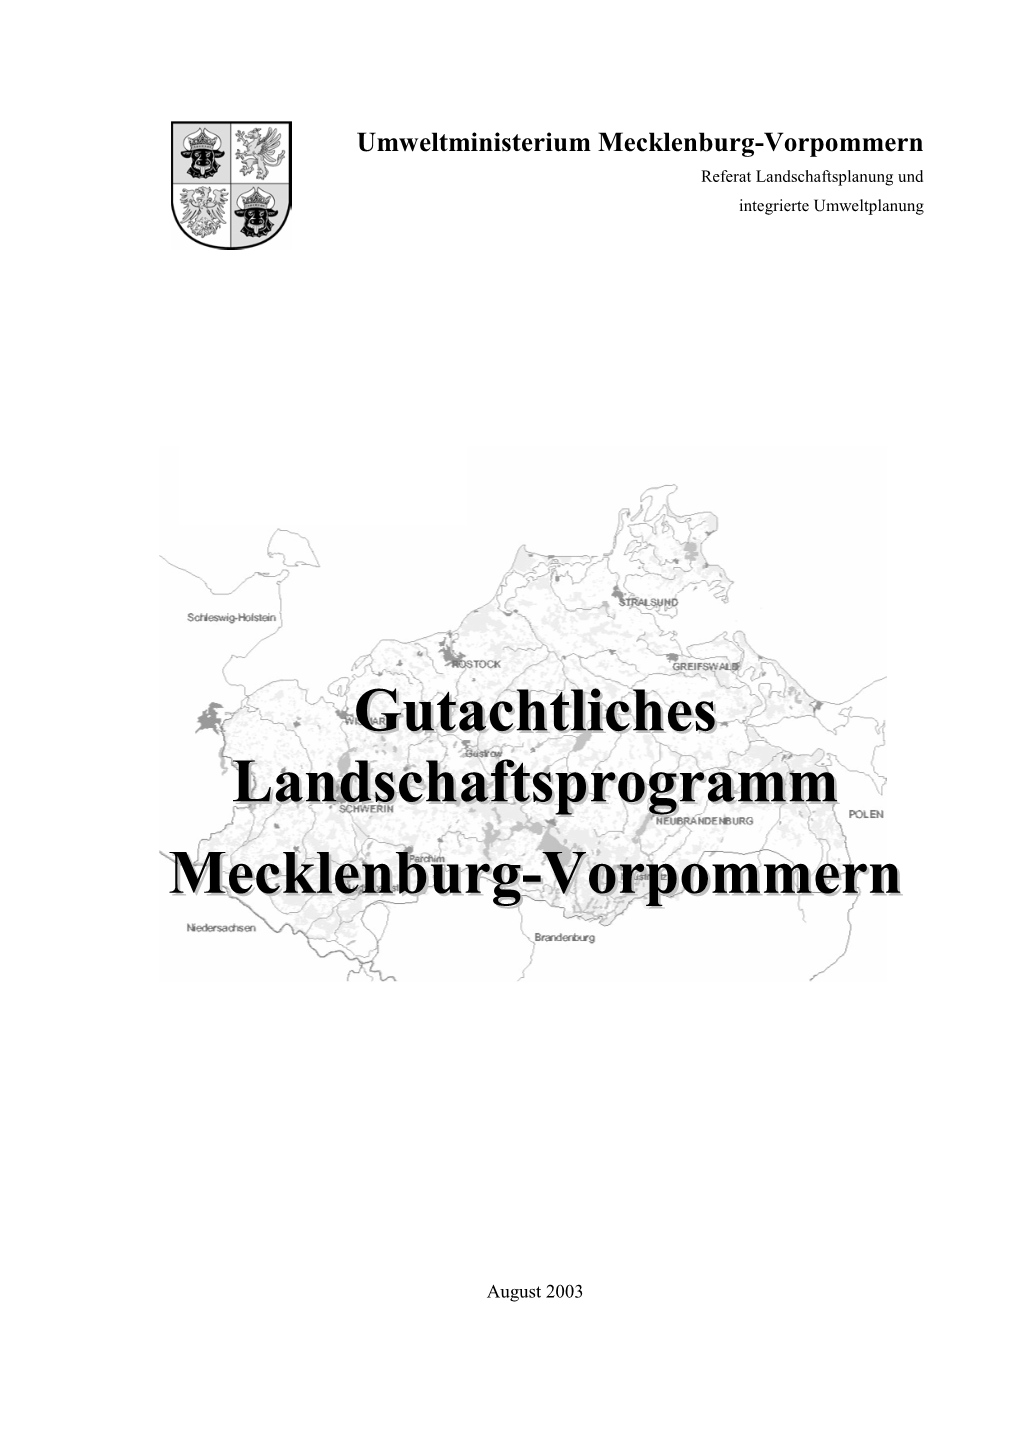 Gutachtliches Landschaftsprogramm Mecklenburg-Vorpommern